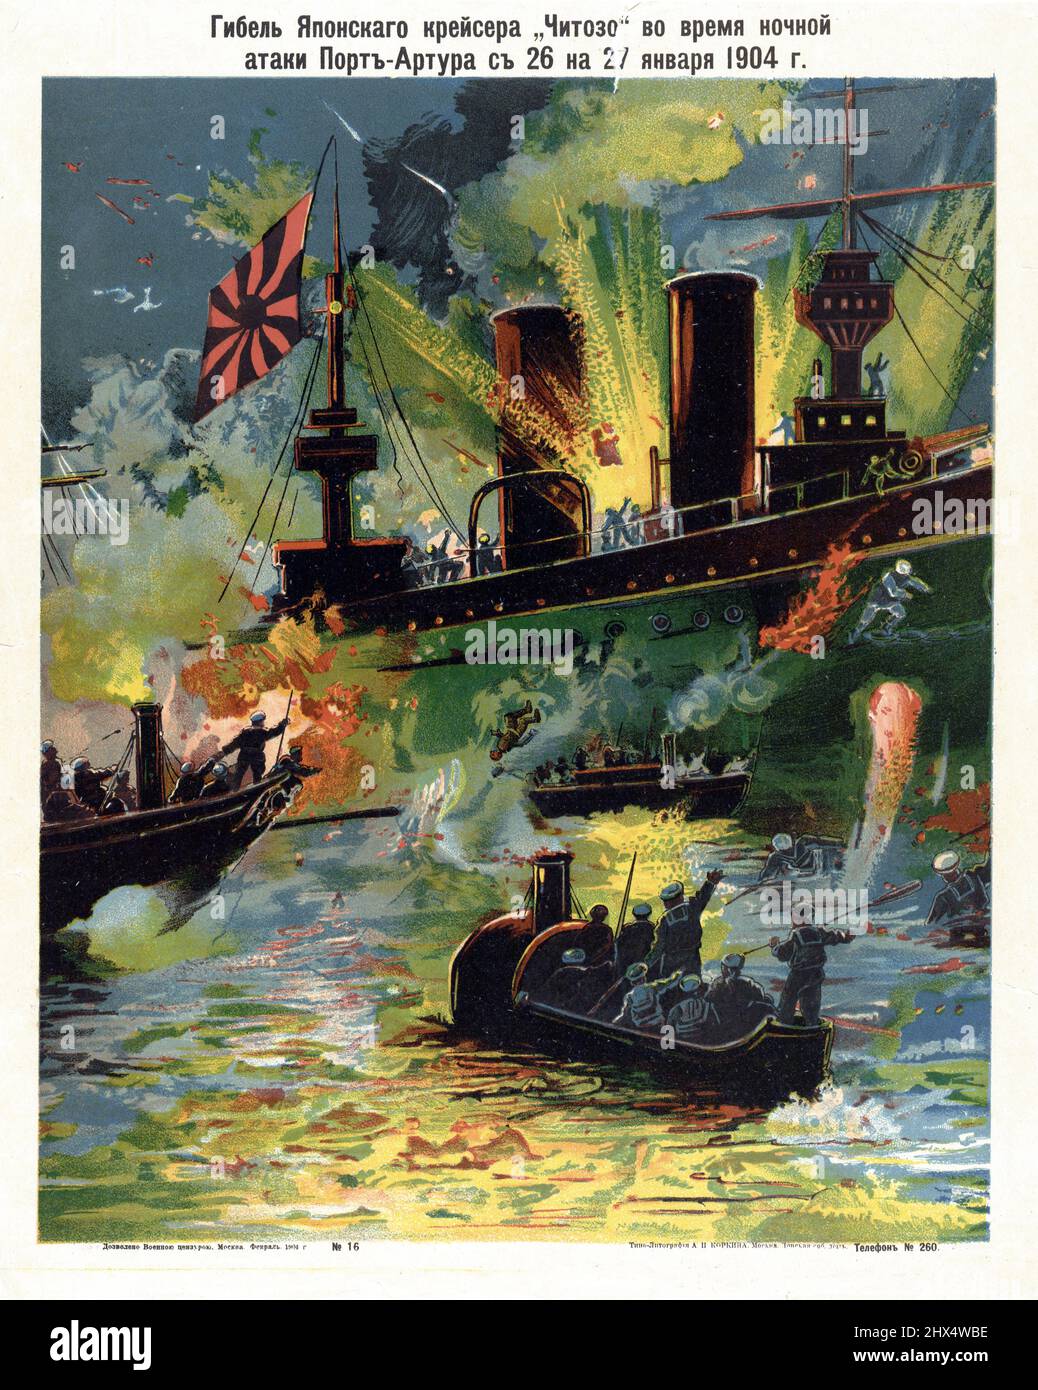 Naufrage du japonais Cruiser 'Chitozo' pendant l'attaque de nuit sur Port Arthur (26 au 27 janvier 1904). Tipo-Litografii︠a︡ A.P. Korkina, 1904. Banque D'Images